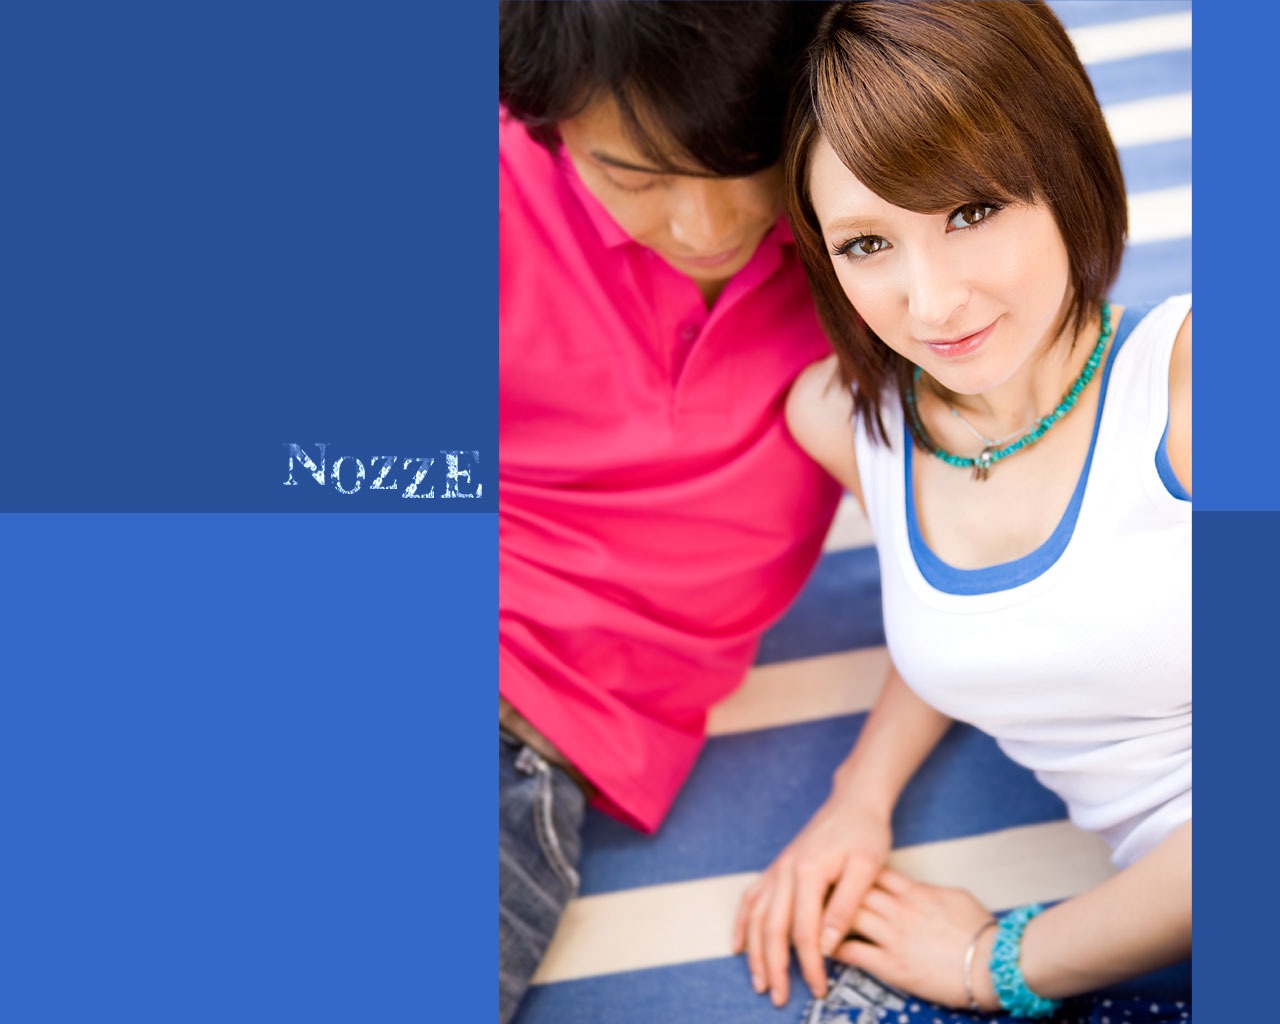 NOZZE Japanese Girls Wallpaper #19 - 1280x1024